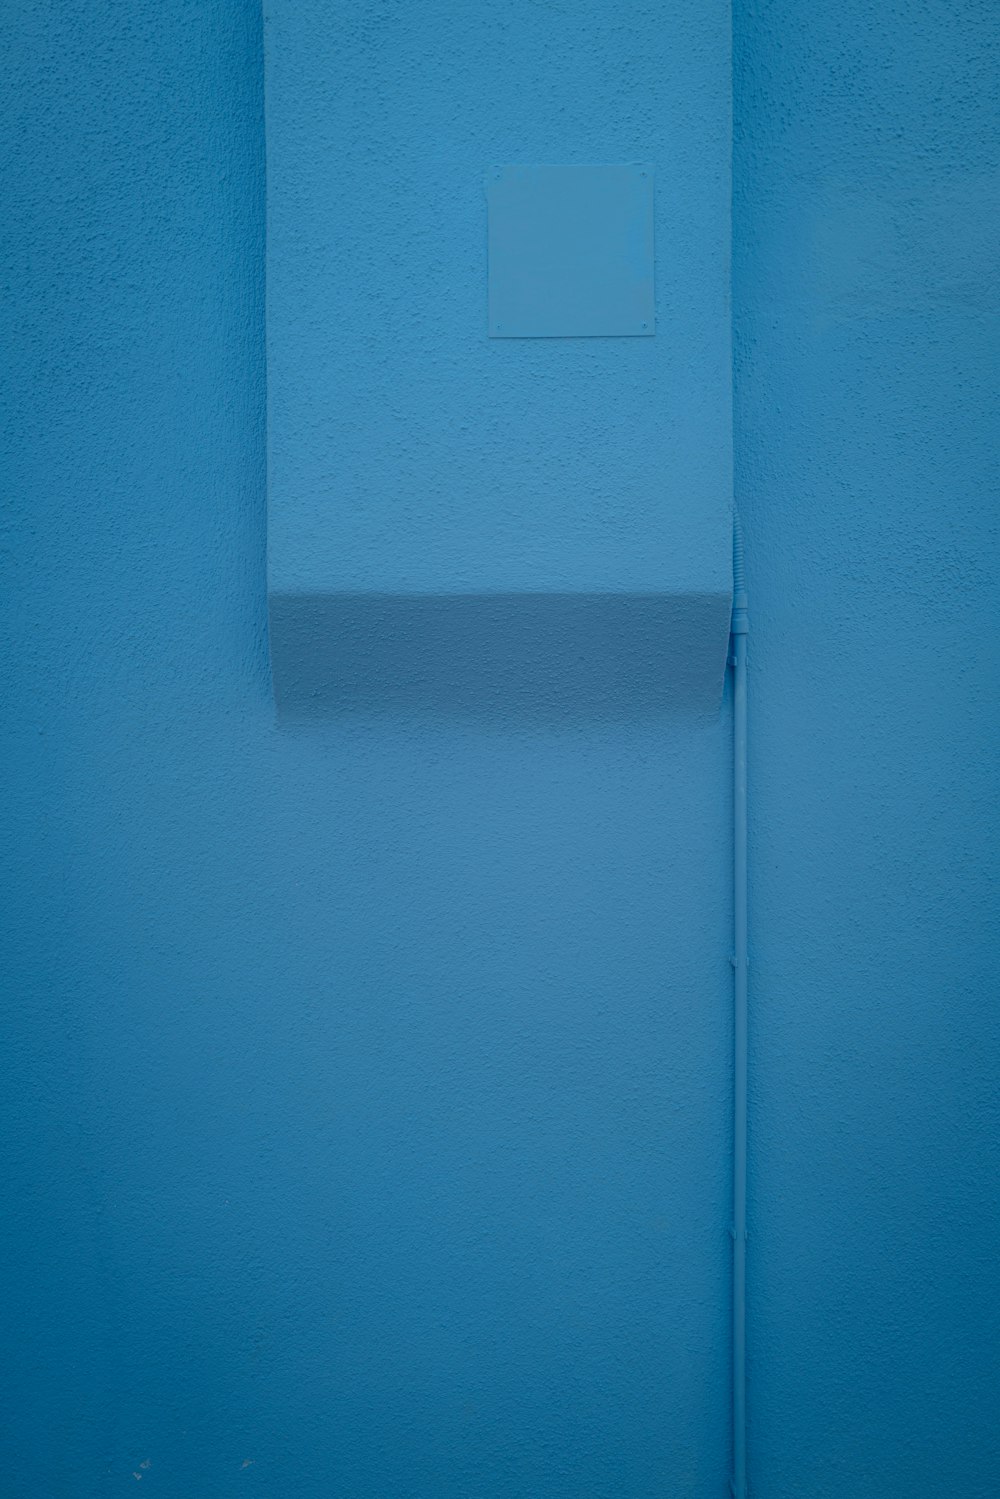 Interruttore della luce bianca sulla parete blu